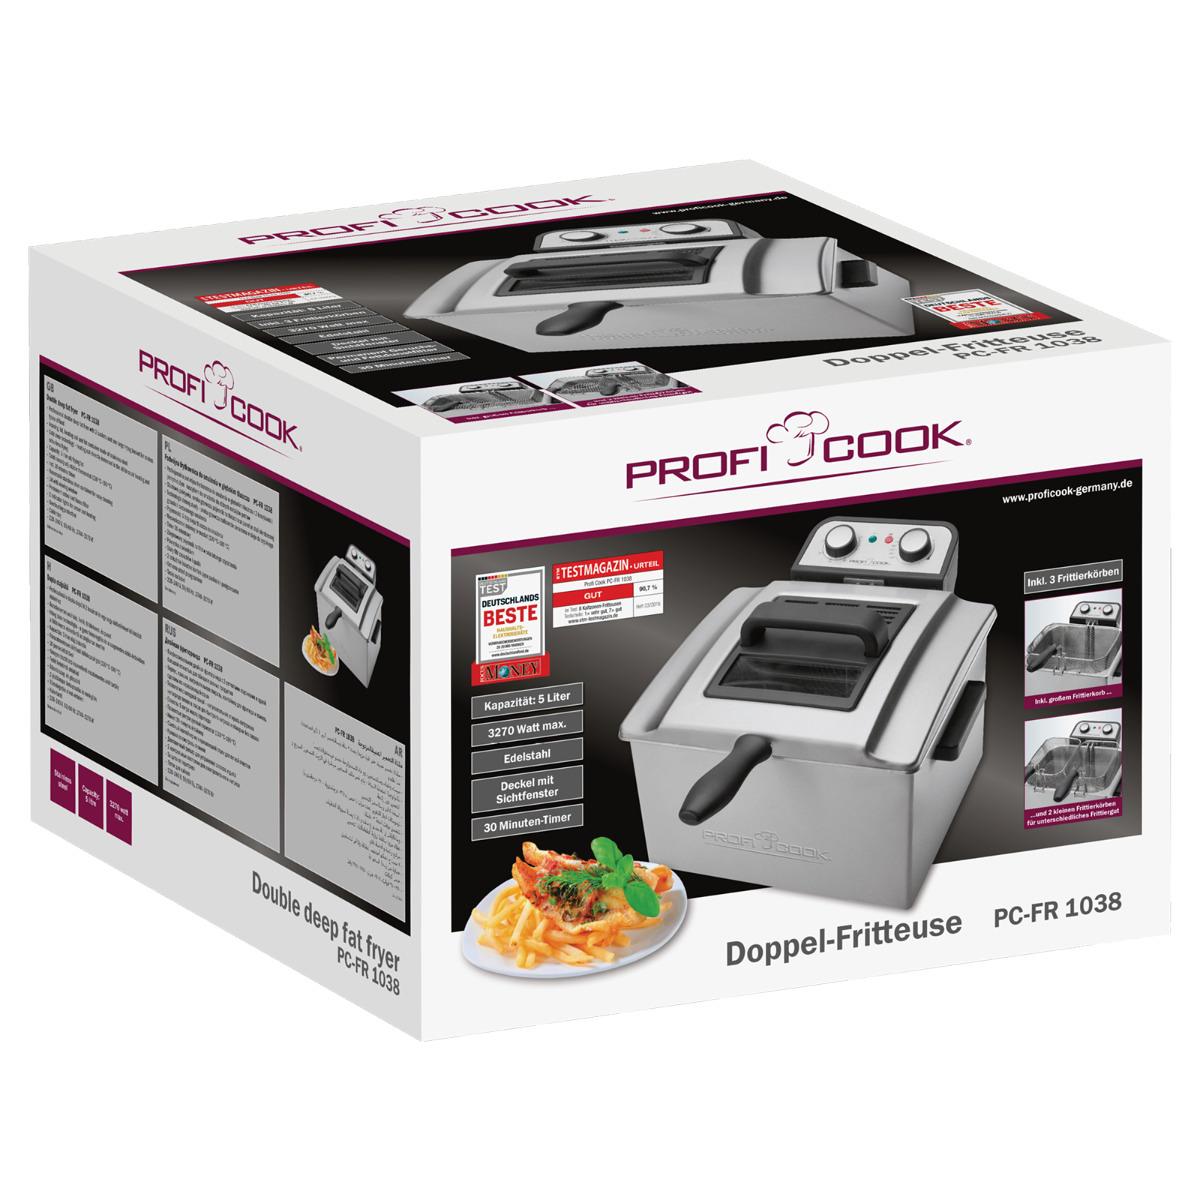 ProfiCook PC-FR L, 1038 Doppel-Fritteuse, Wagner Elektroshop W, Kontrollleuchten, 2 stufenlos, (501038) 30-Minuten-Timer, 5 inox 3000